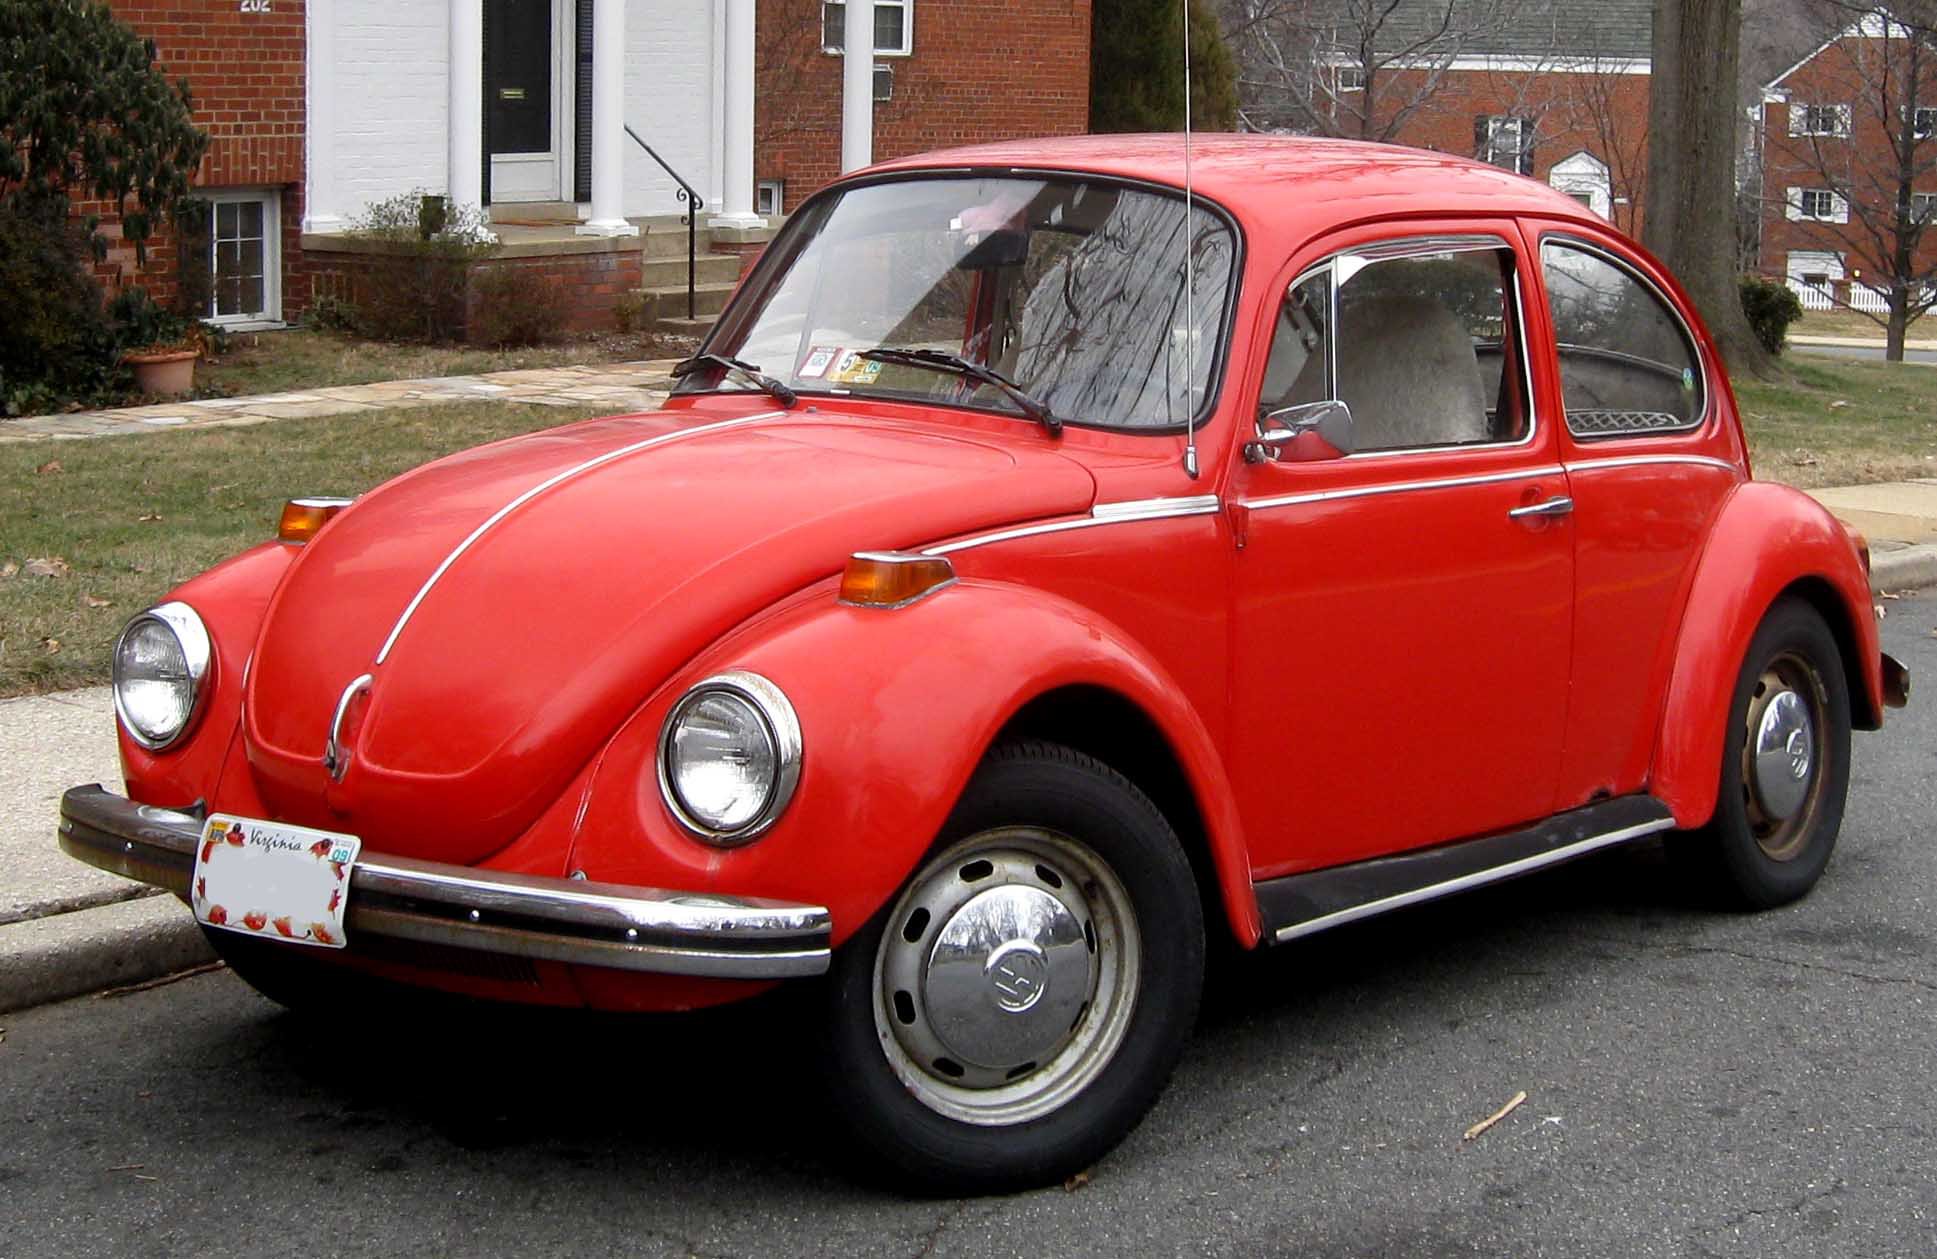 Volkswagen Type 1, nebo-li Brouk